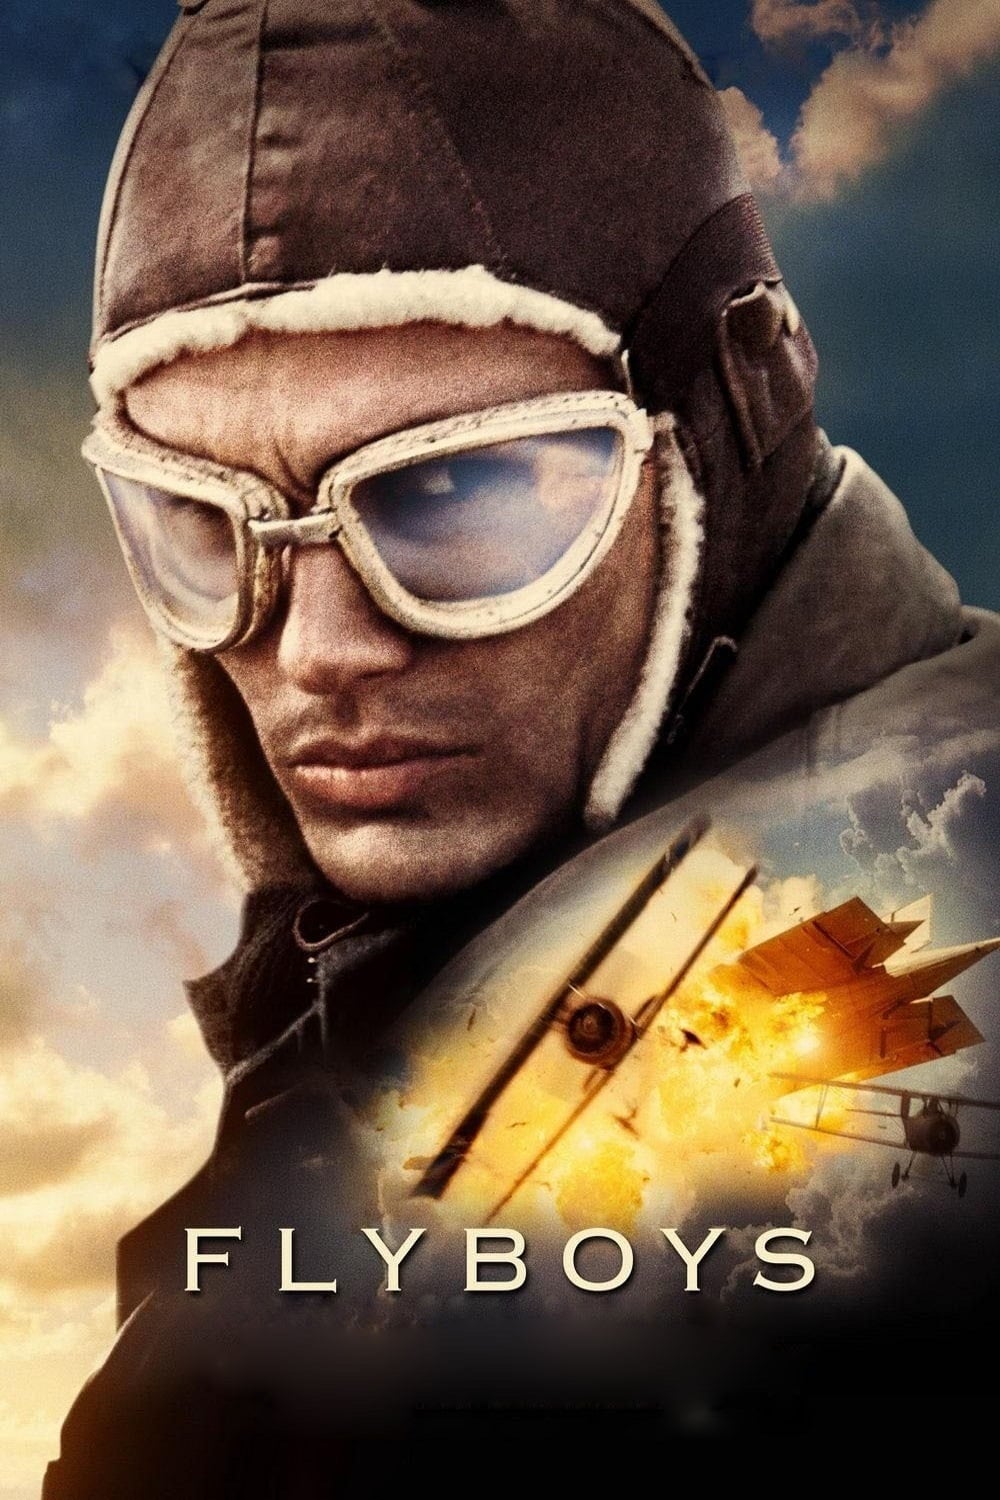 Plakat von "Flyboys - Helden der Lüfte"